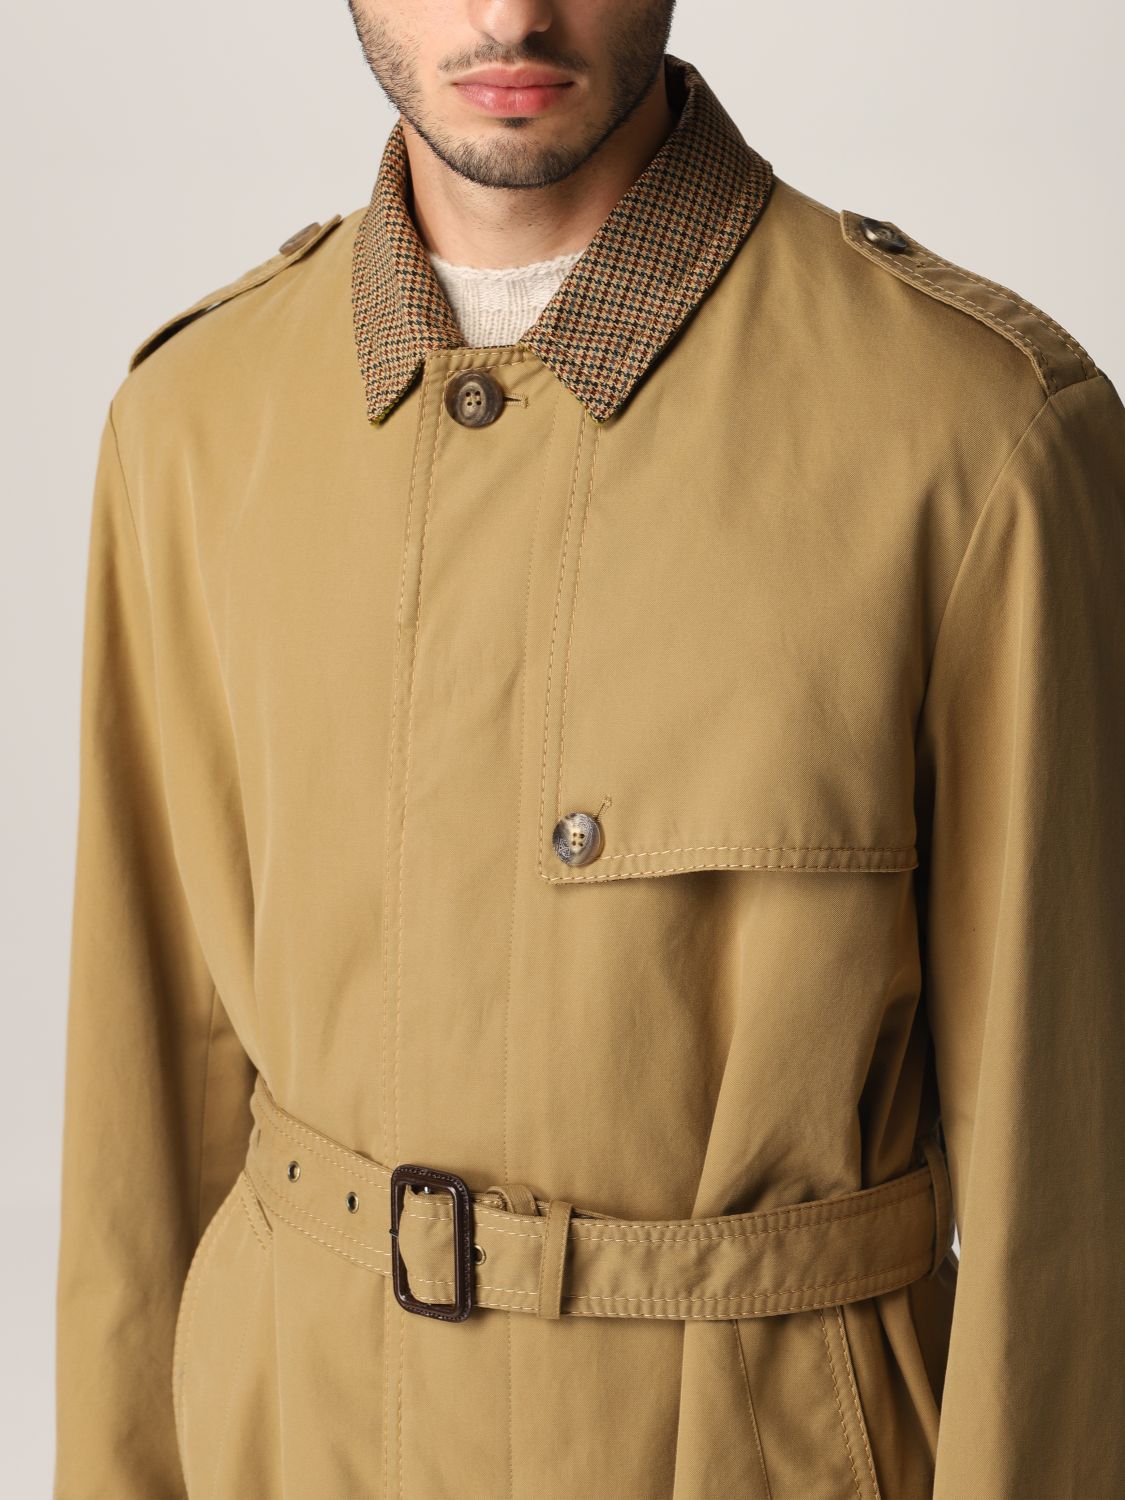 Trench coat Etro: Etro cotton trench coat beige 5